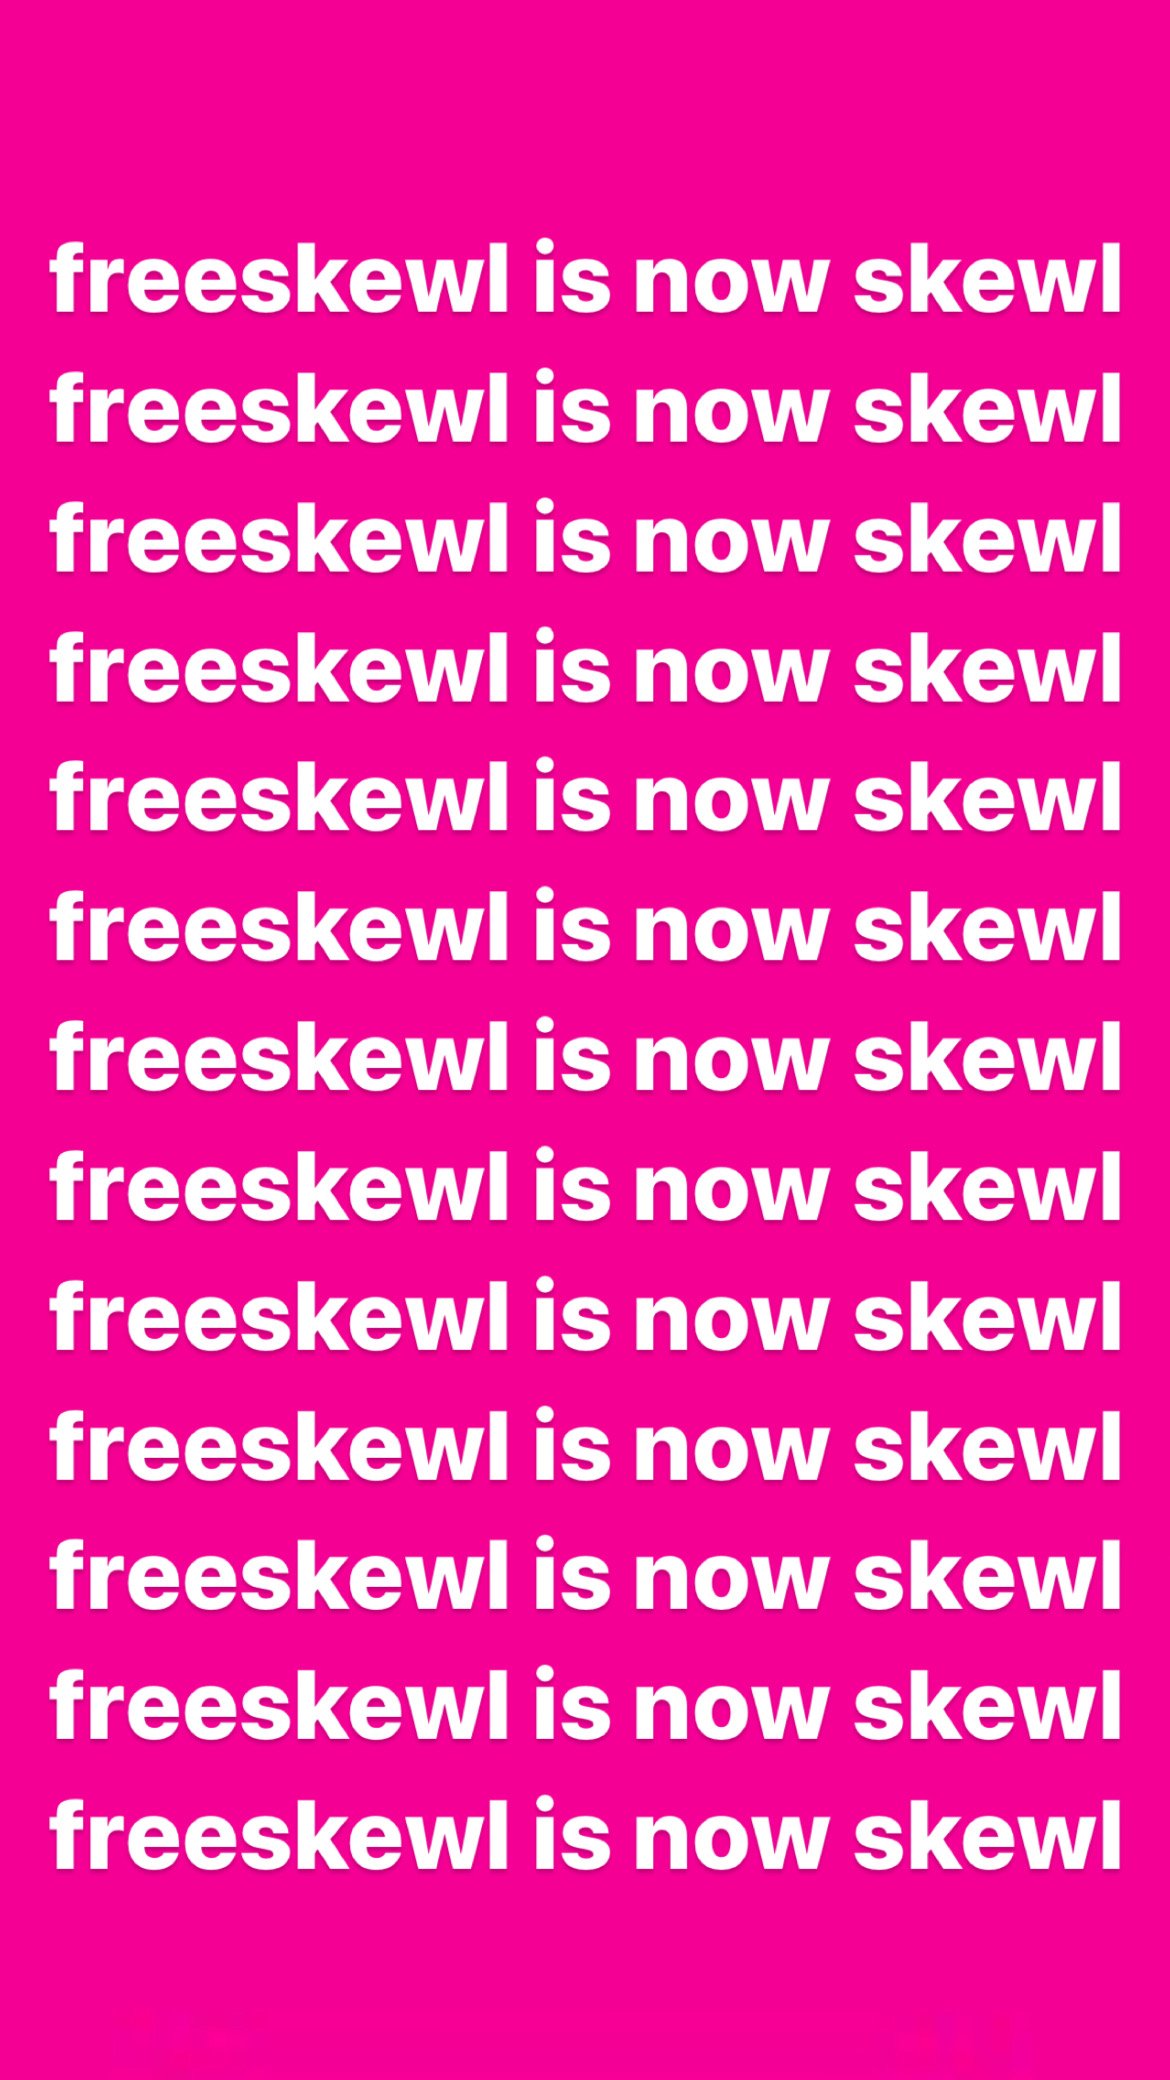 freeskewl is now skewl pink.JPG